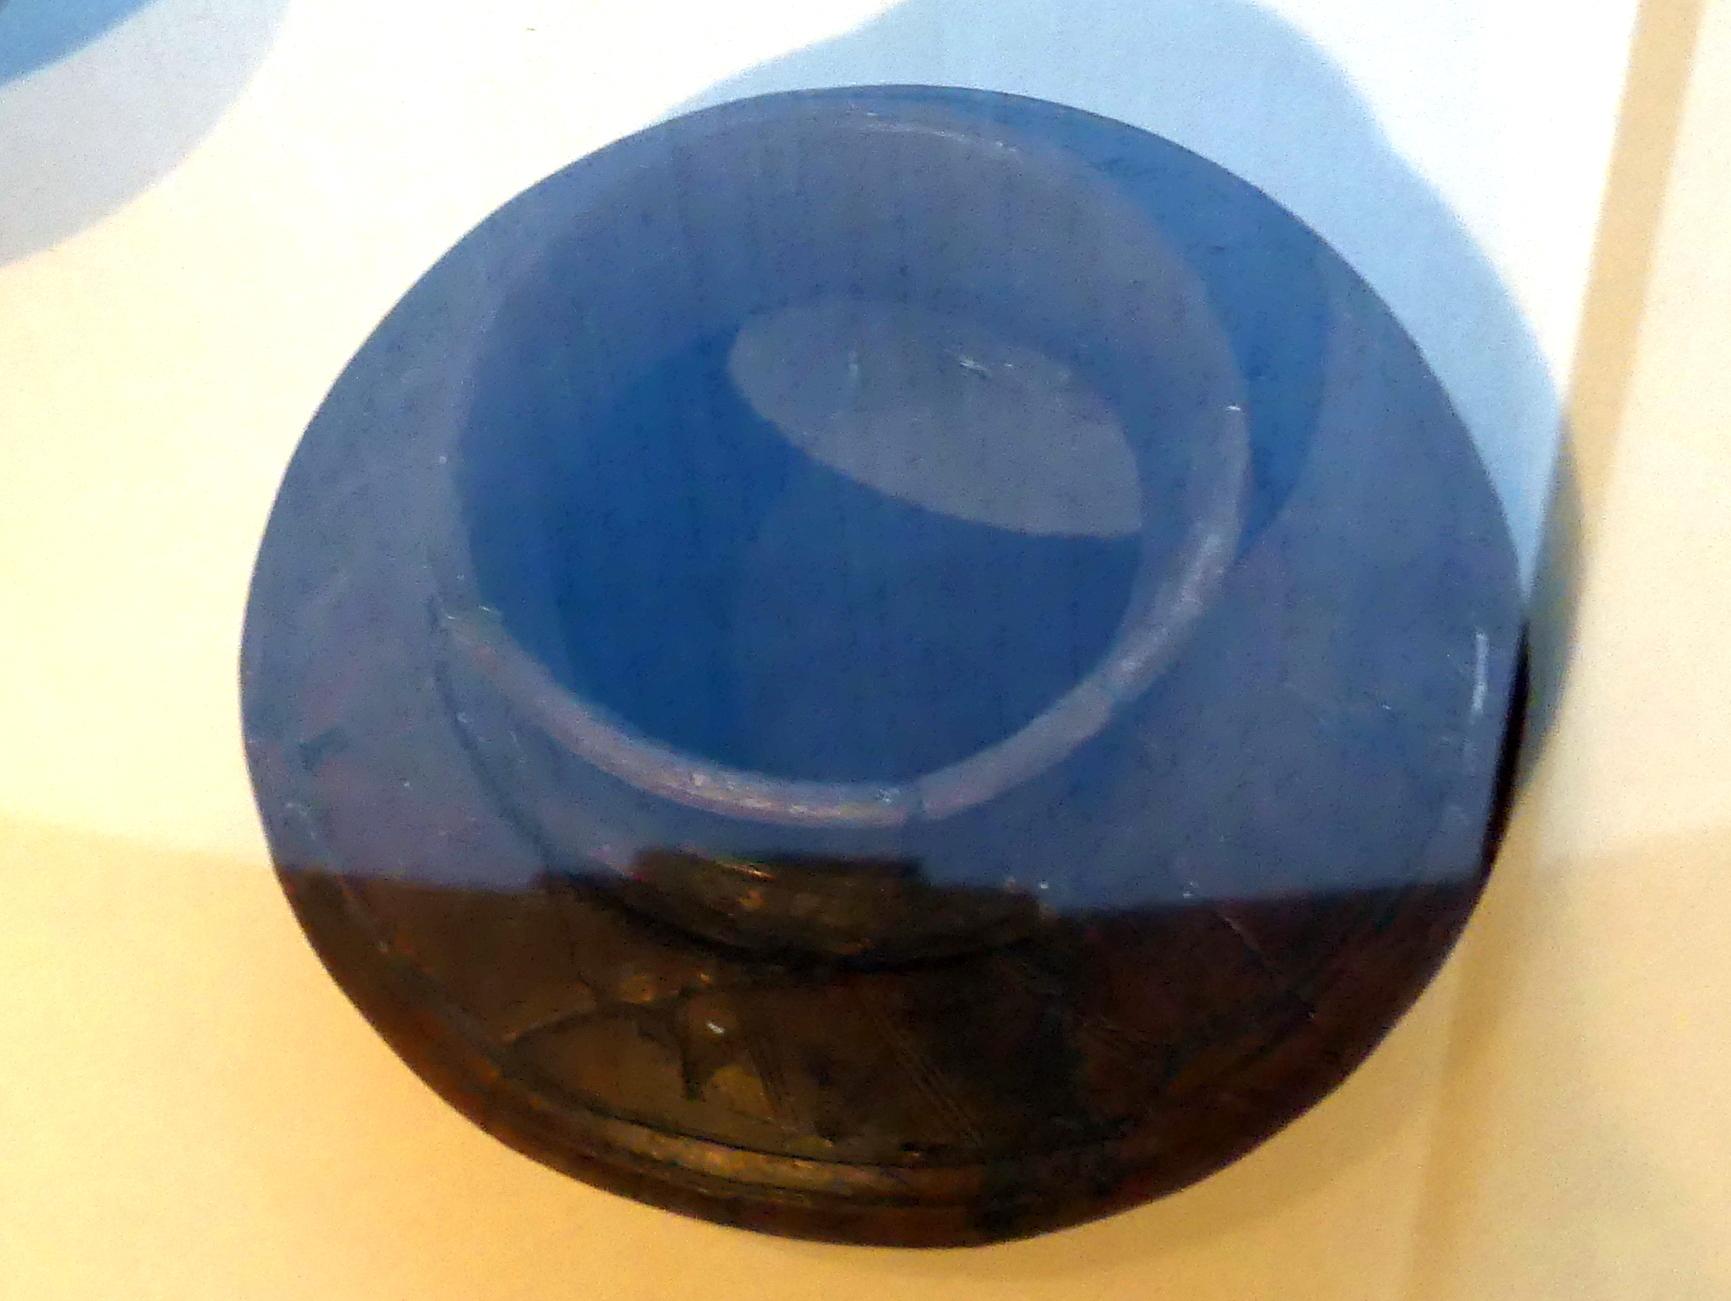 Linsenflasche, mit Volutendekor, Latènezeit, 700 - 1 v. Chr.